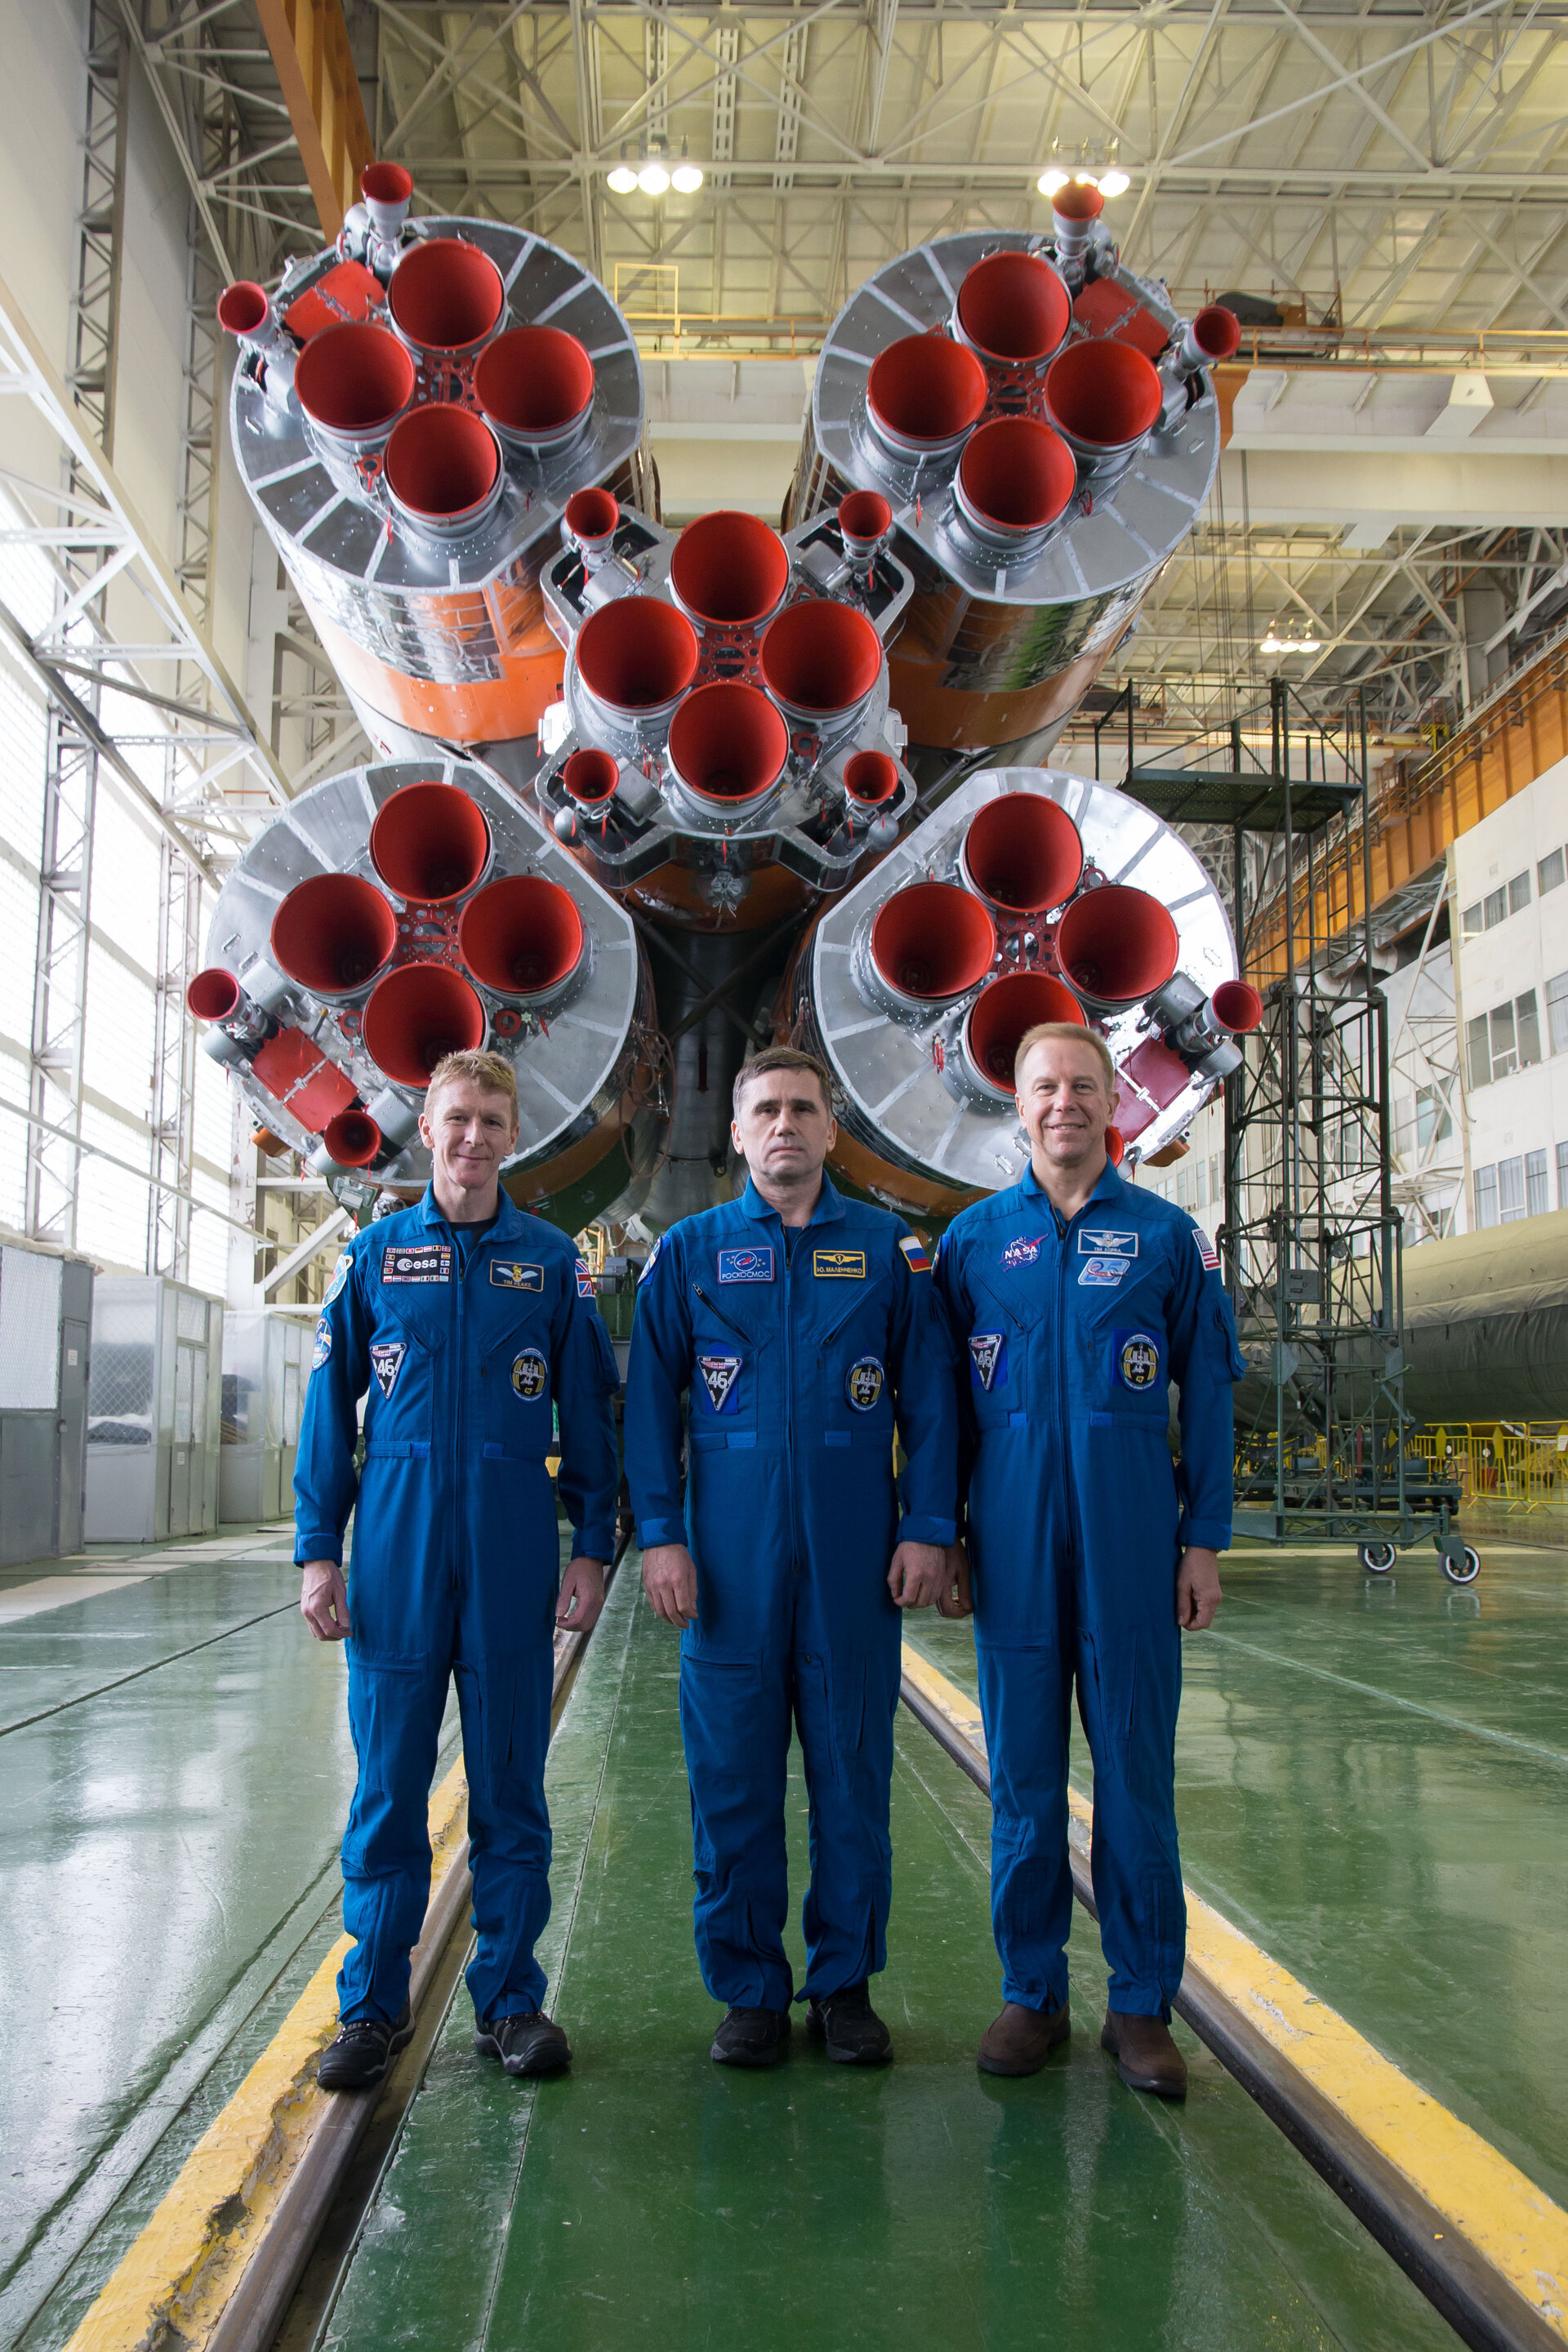 Soyuz TMA-19M crew with launcher